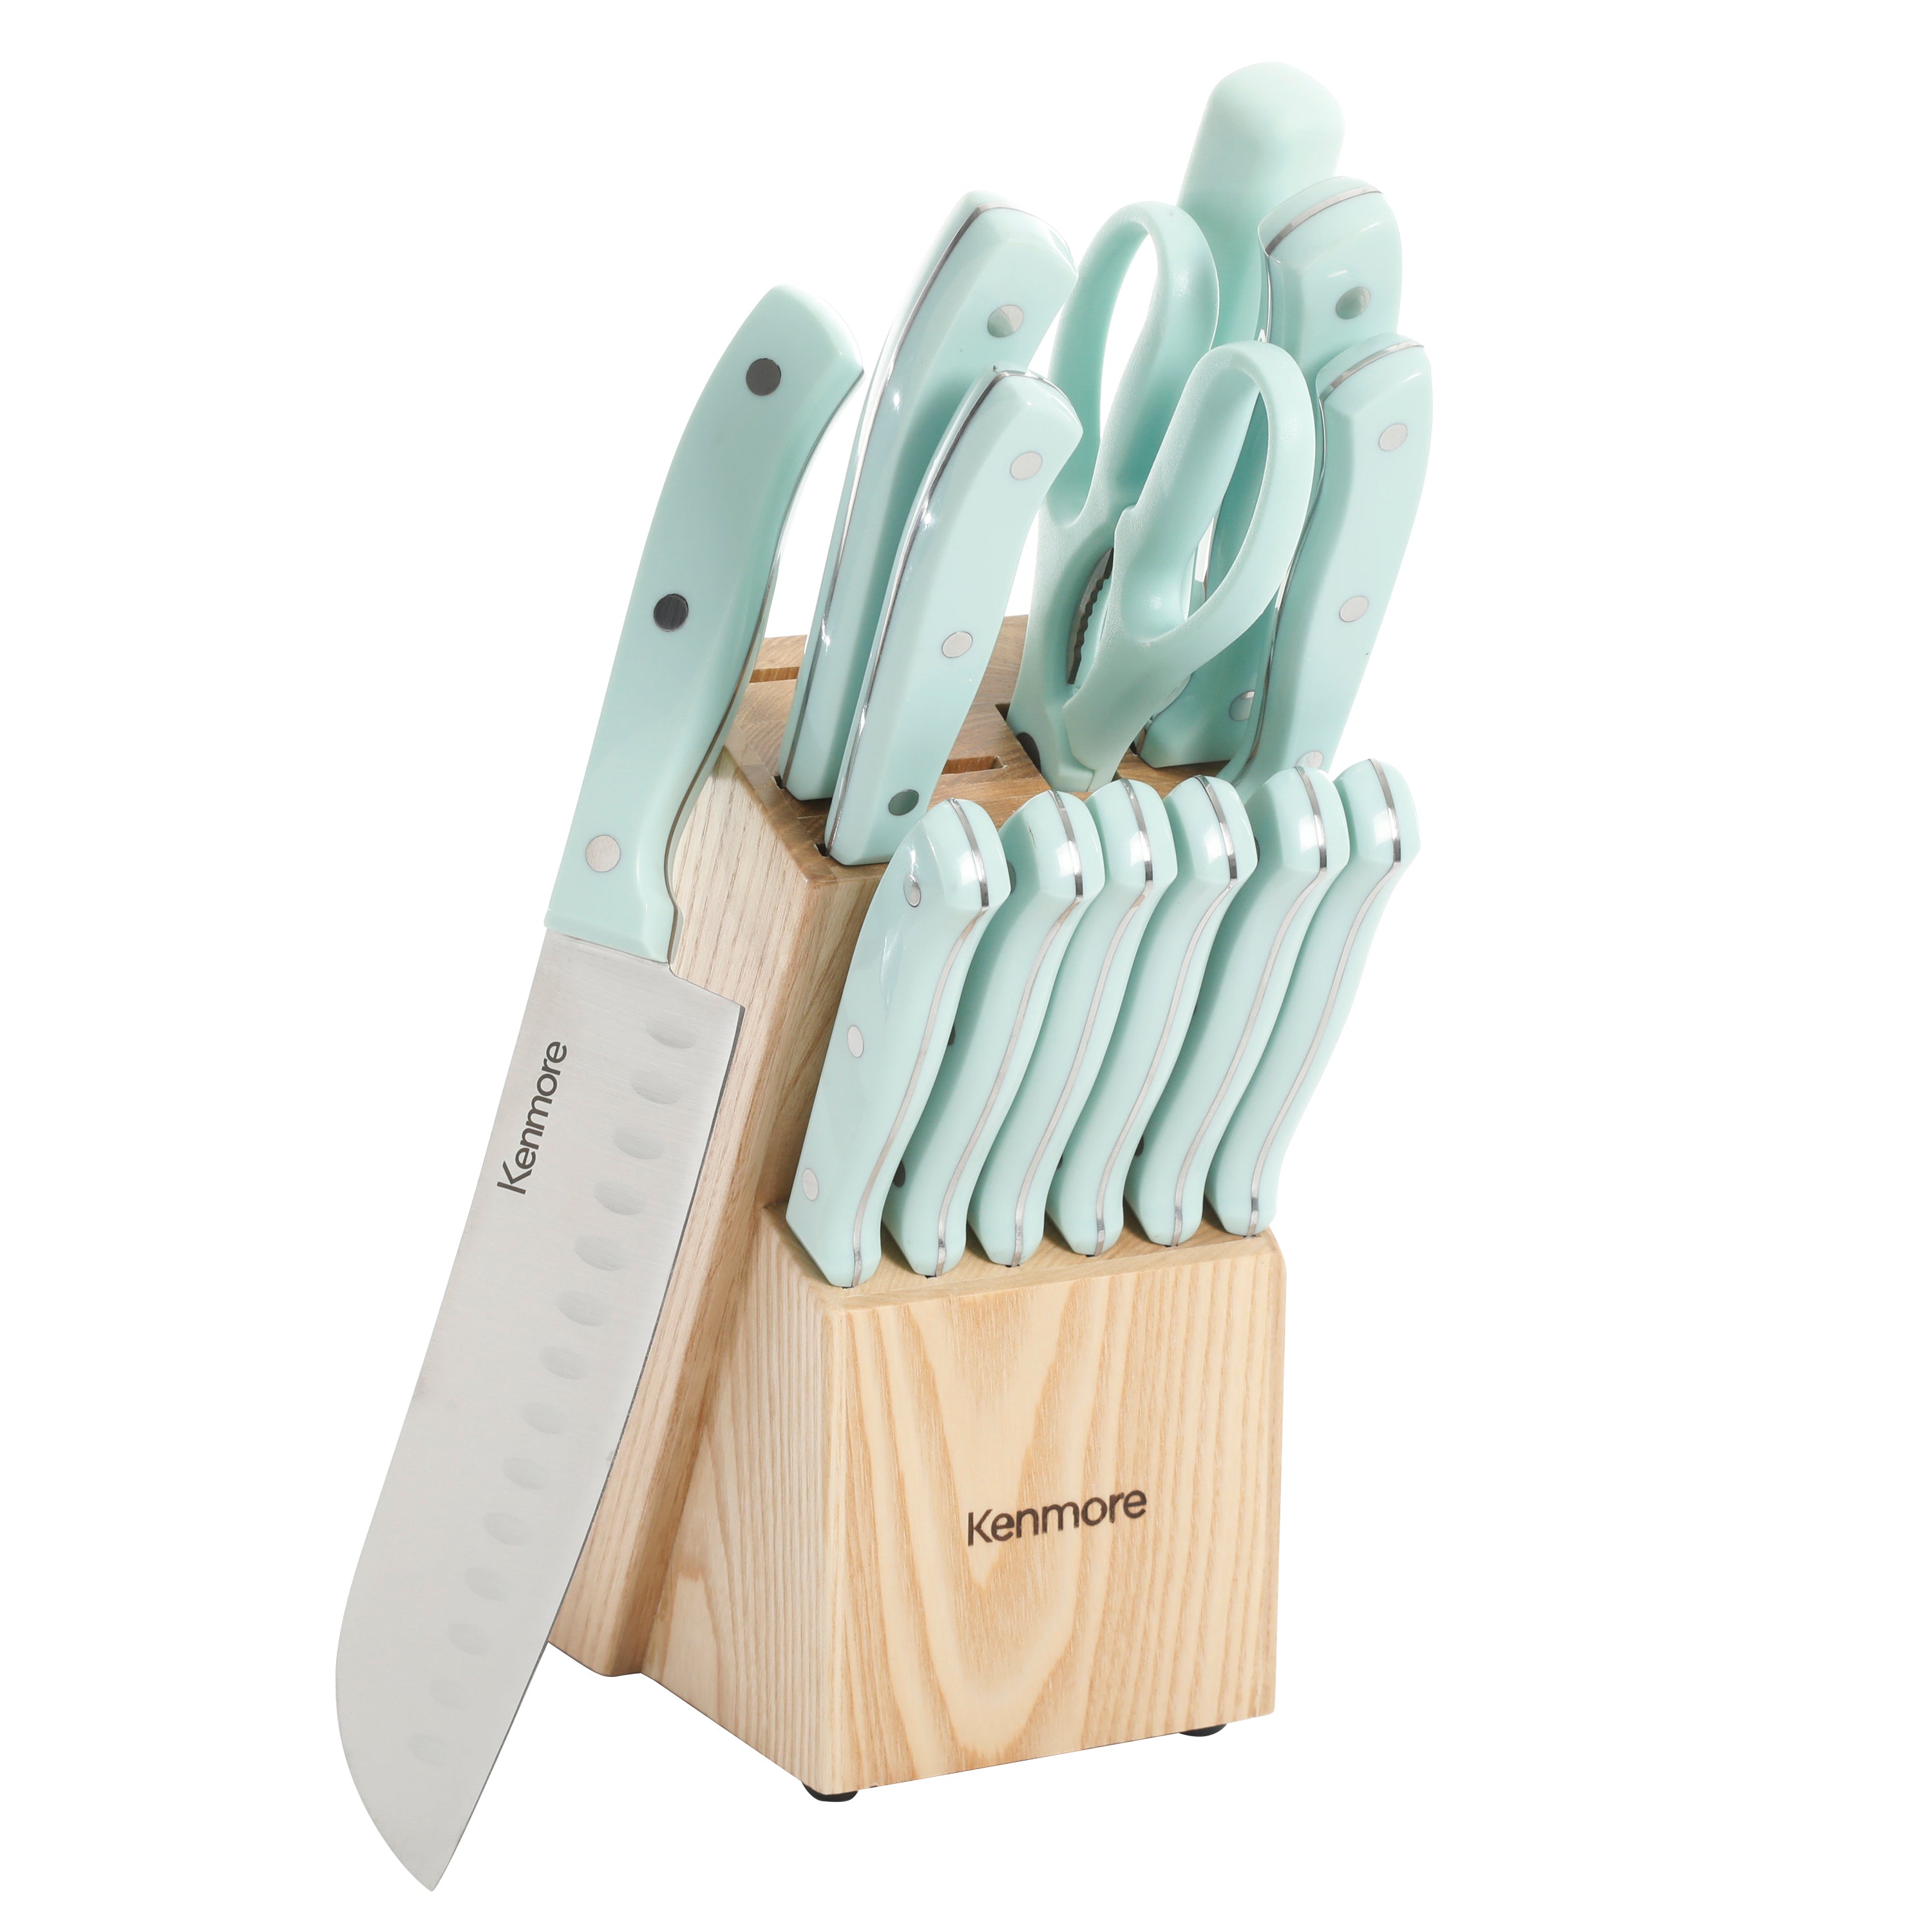 Oster Granger 14-Piece Cutlery Set w/ Wood Block